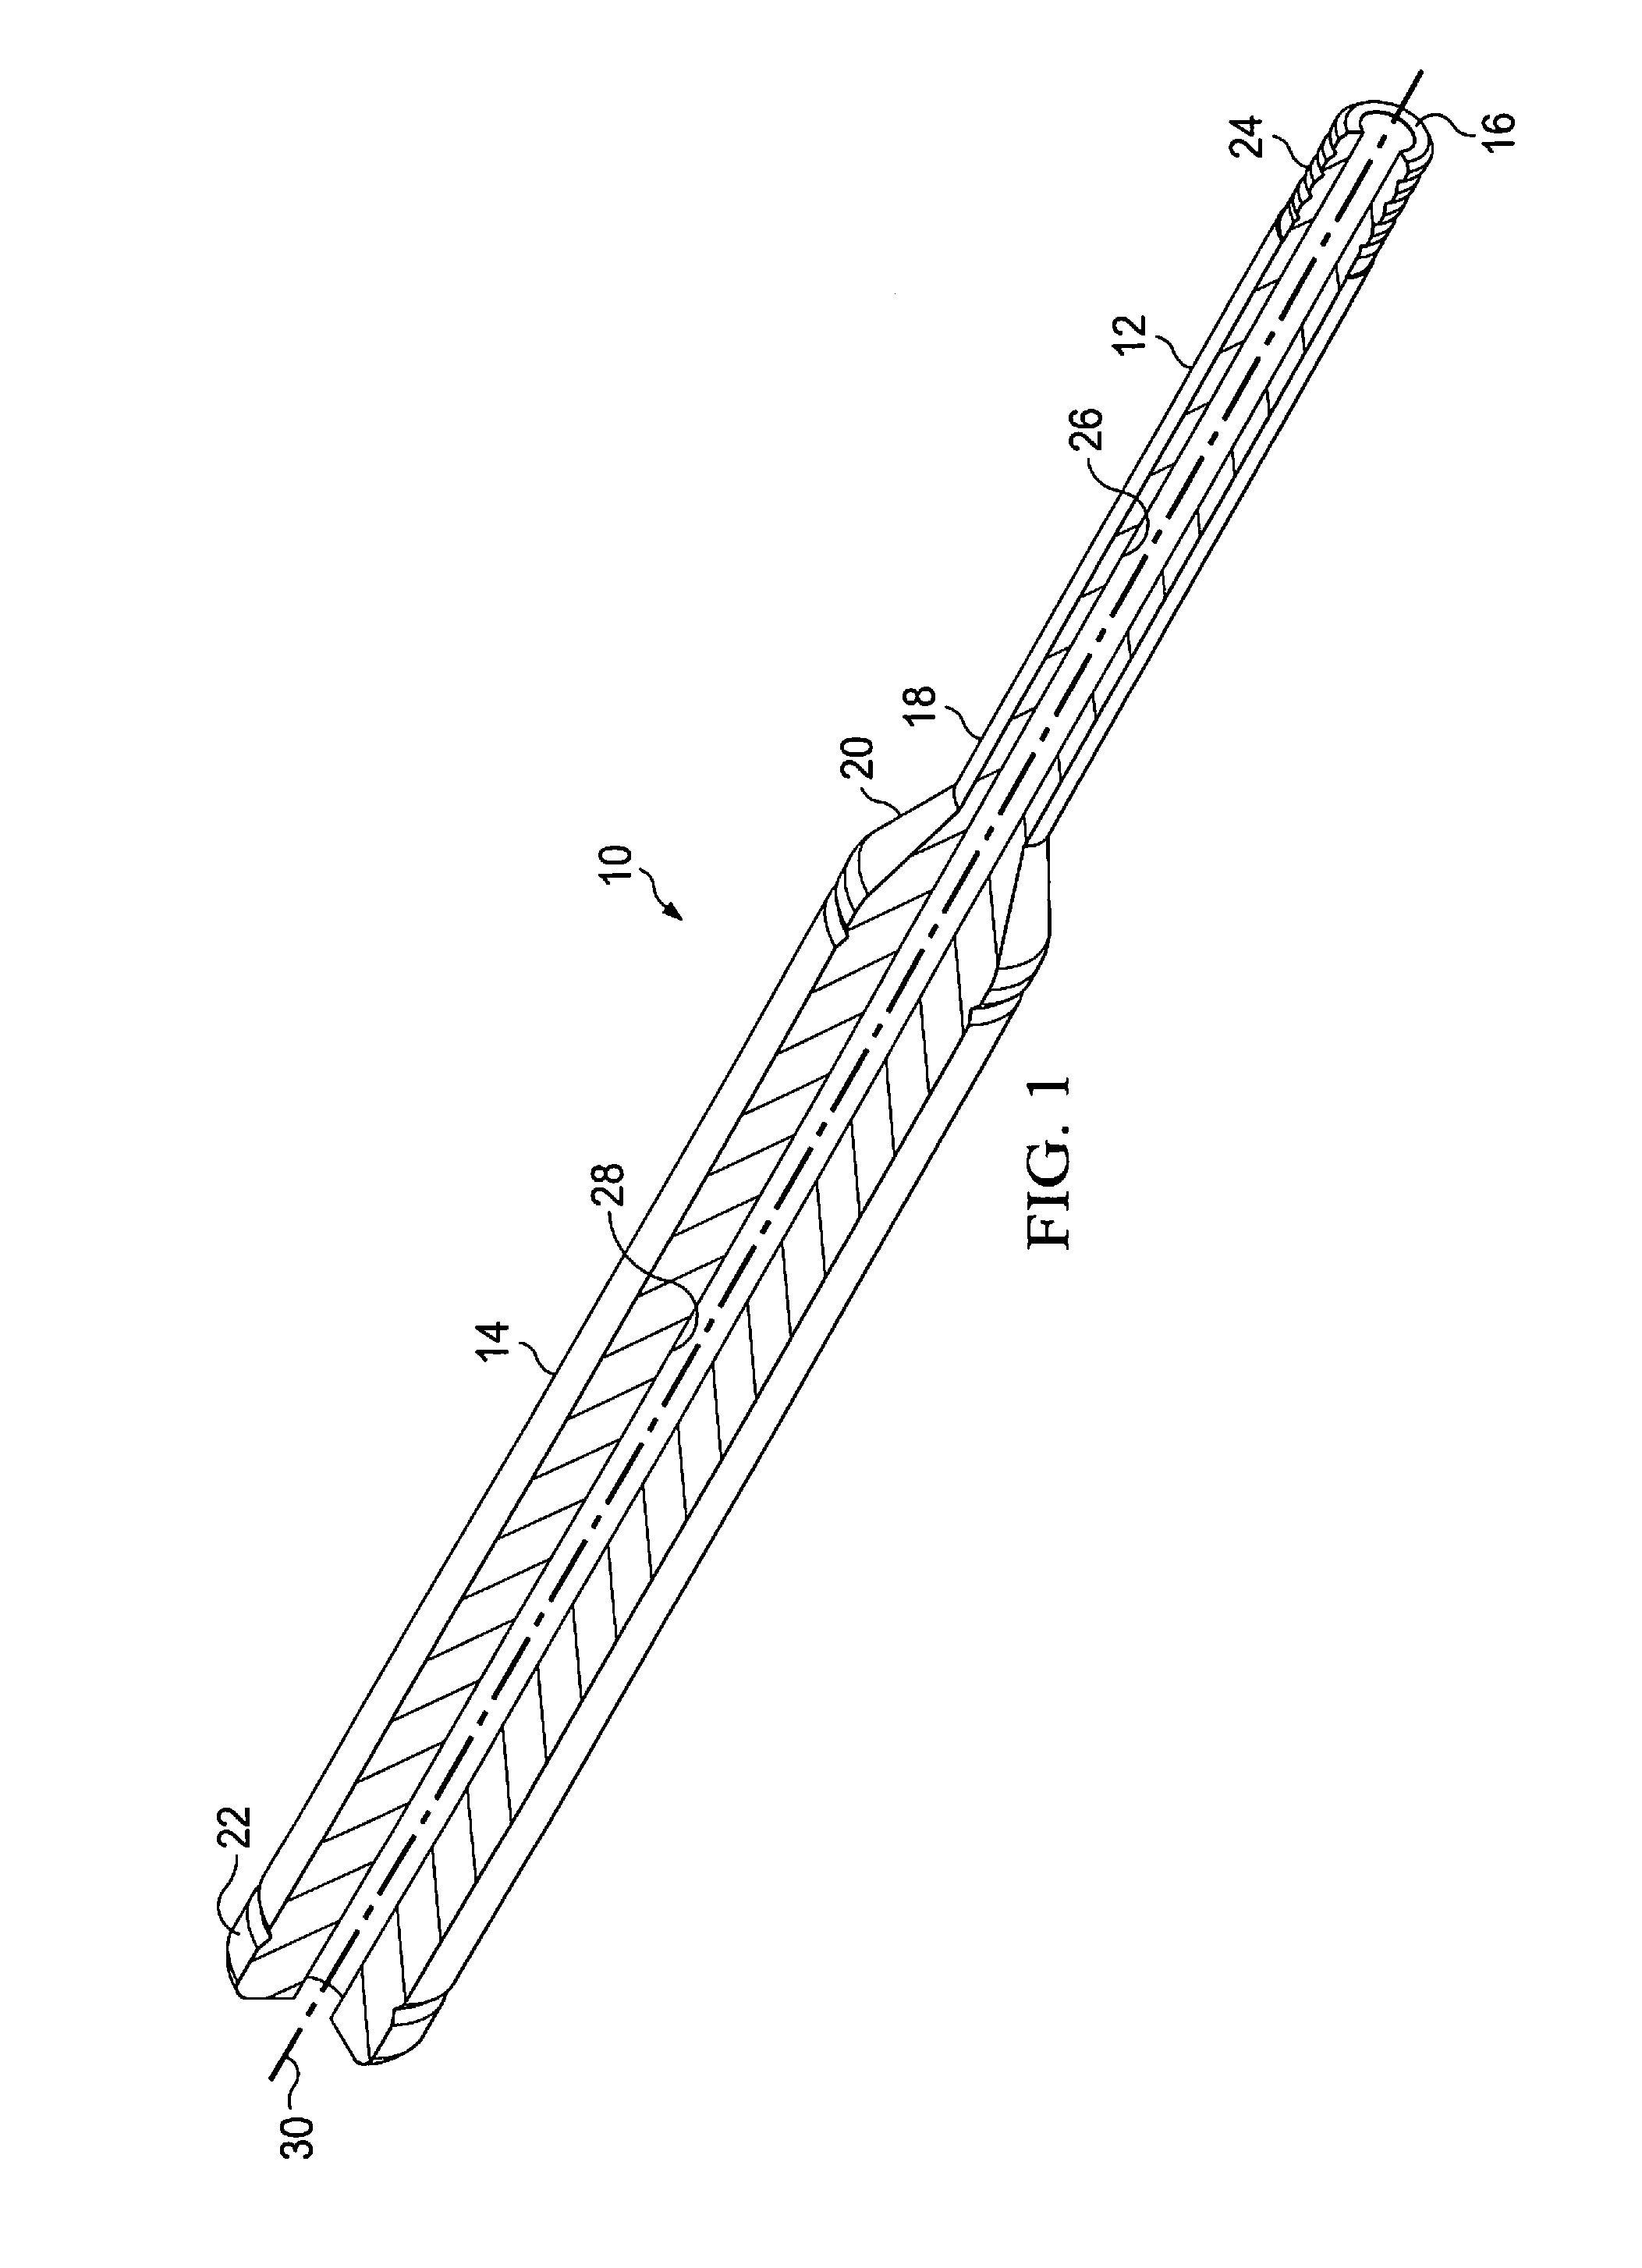 Percutaneous exchange tube and method of use